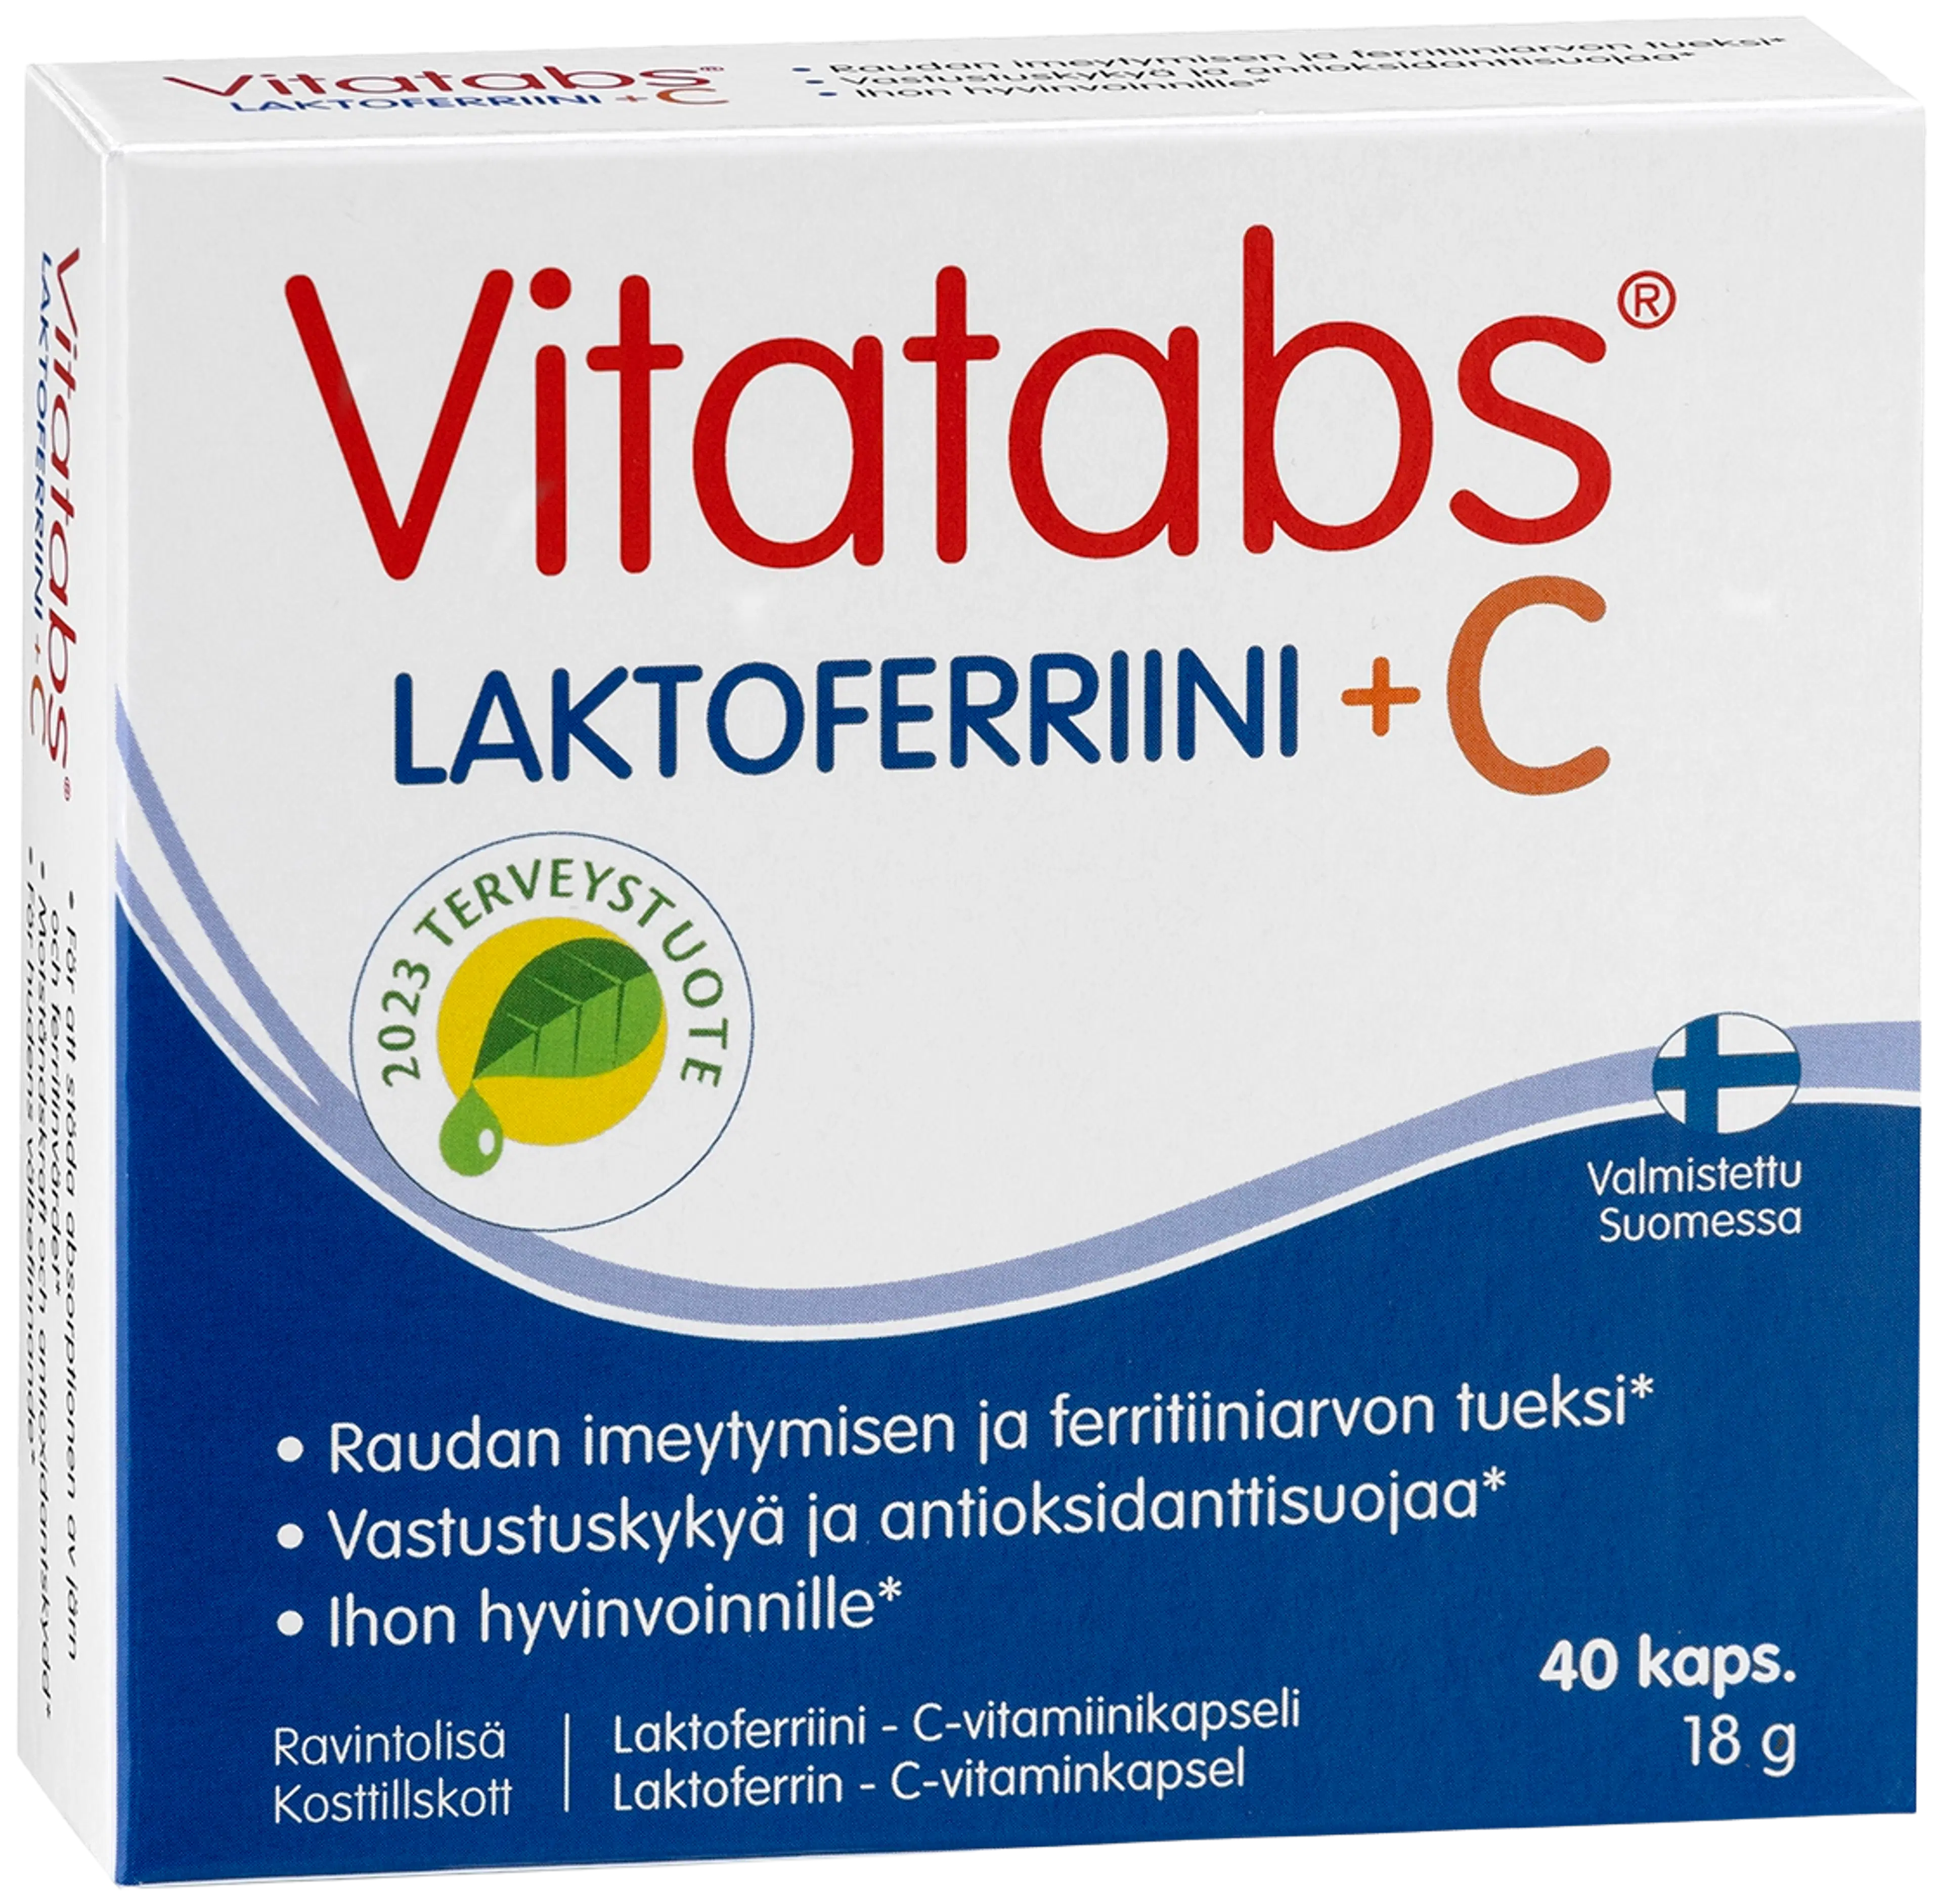 Vitatabs Laktoferriini + C Laktoferriinikapseli 40 kaps